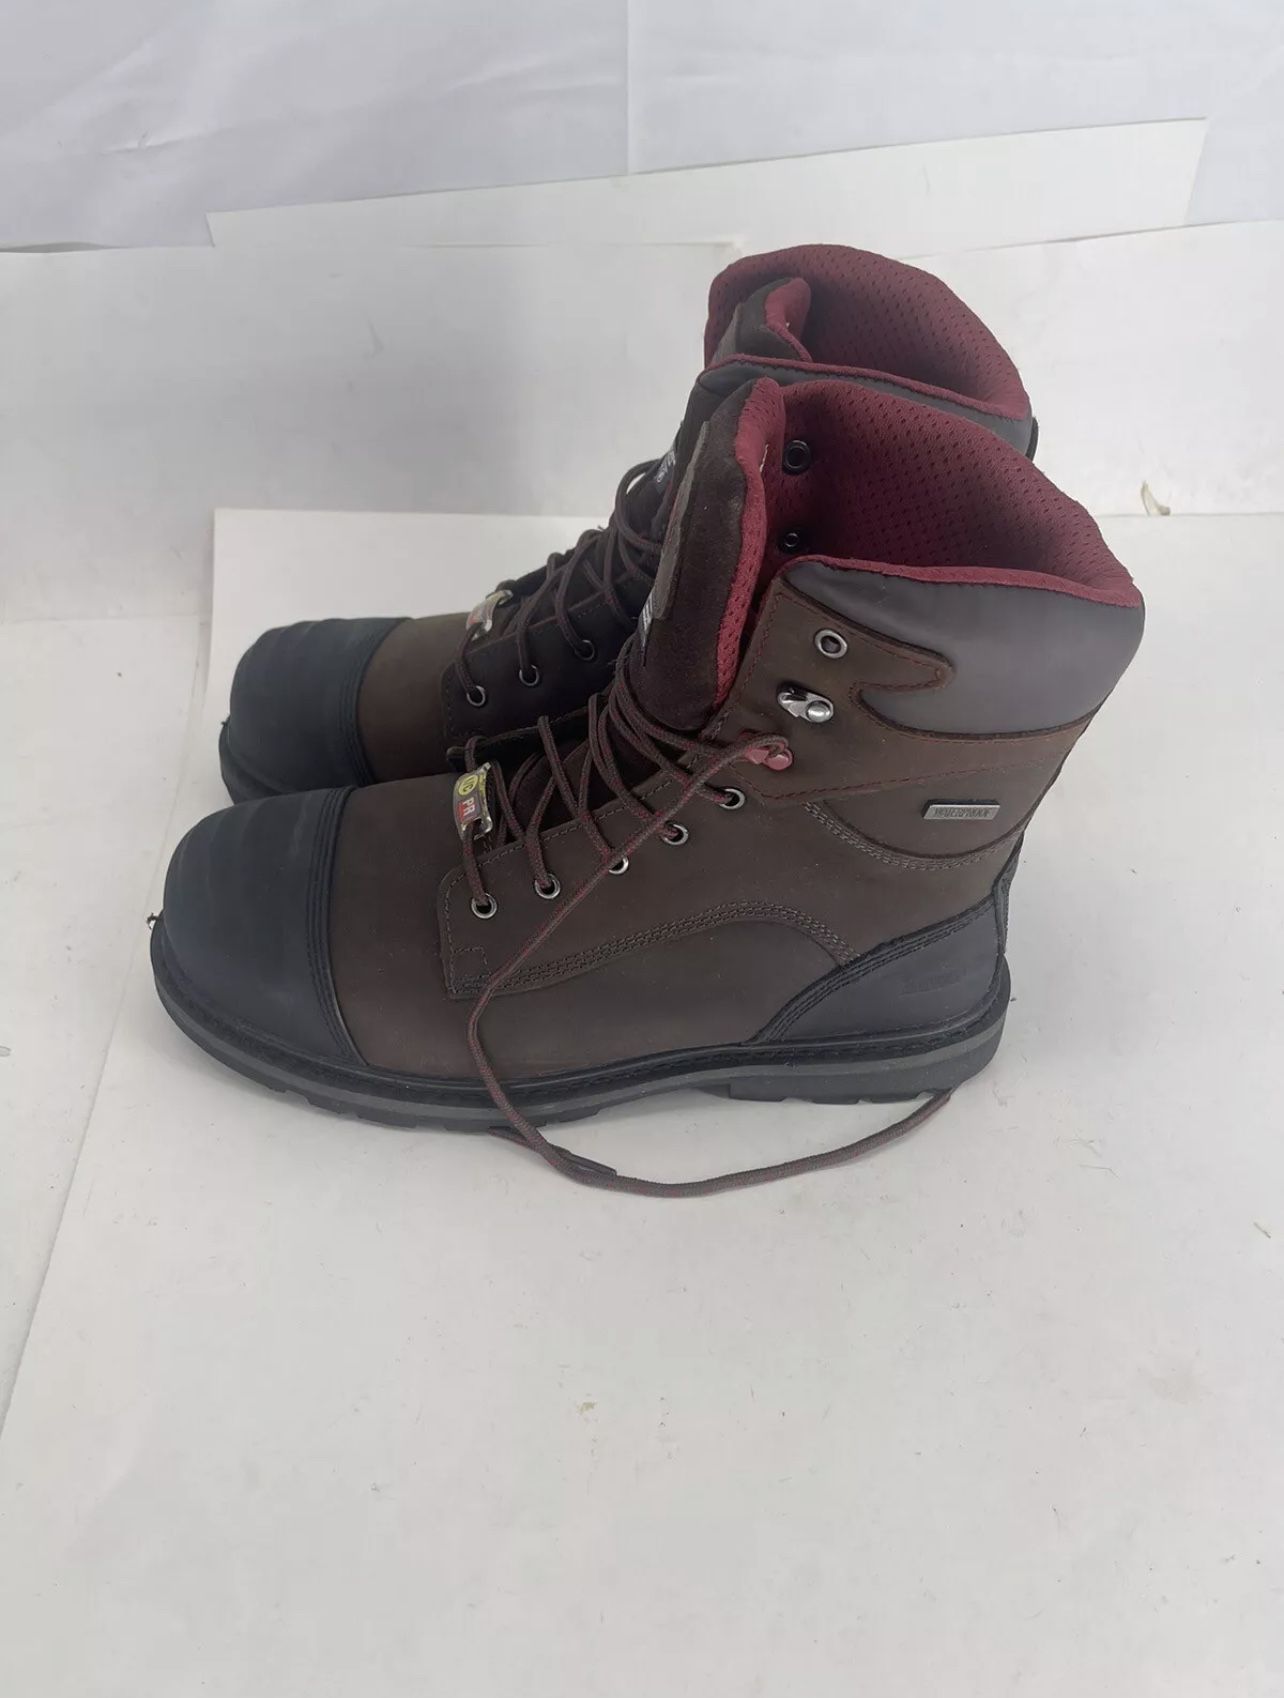 Avenger Work Boots Mens 8" Hammer Waterproof 1000 Gram Insulated A7577. Size 12